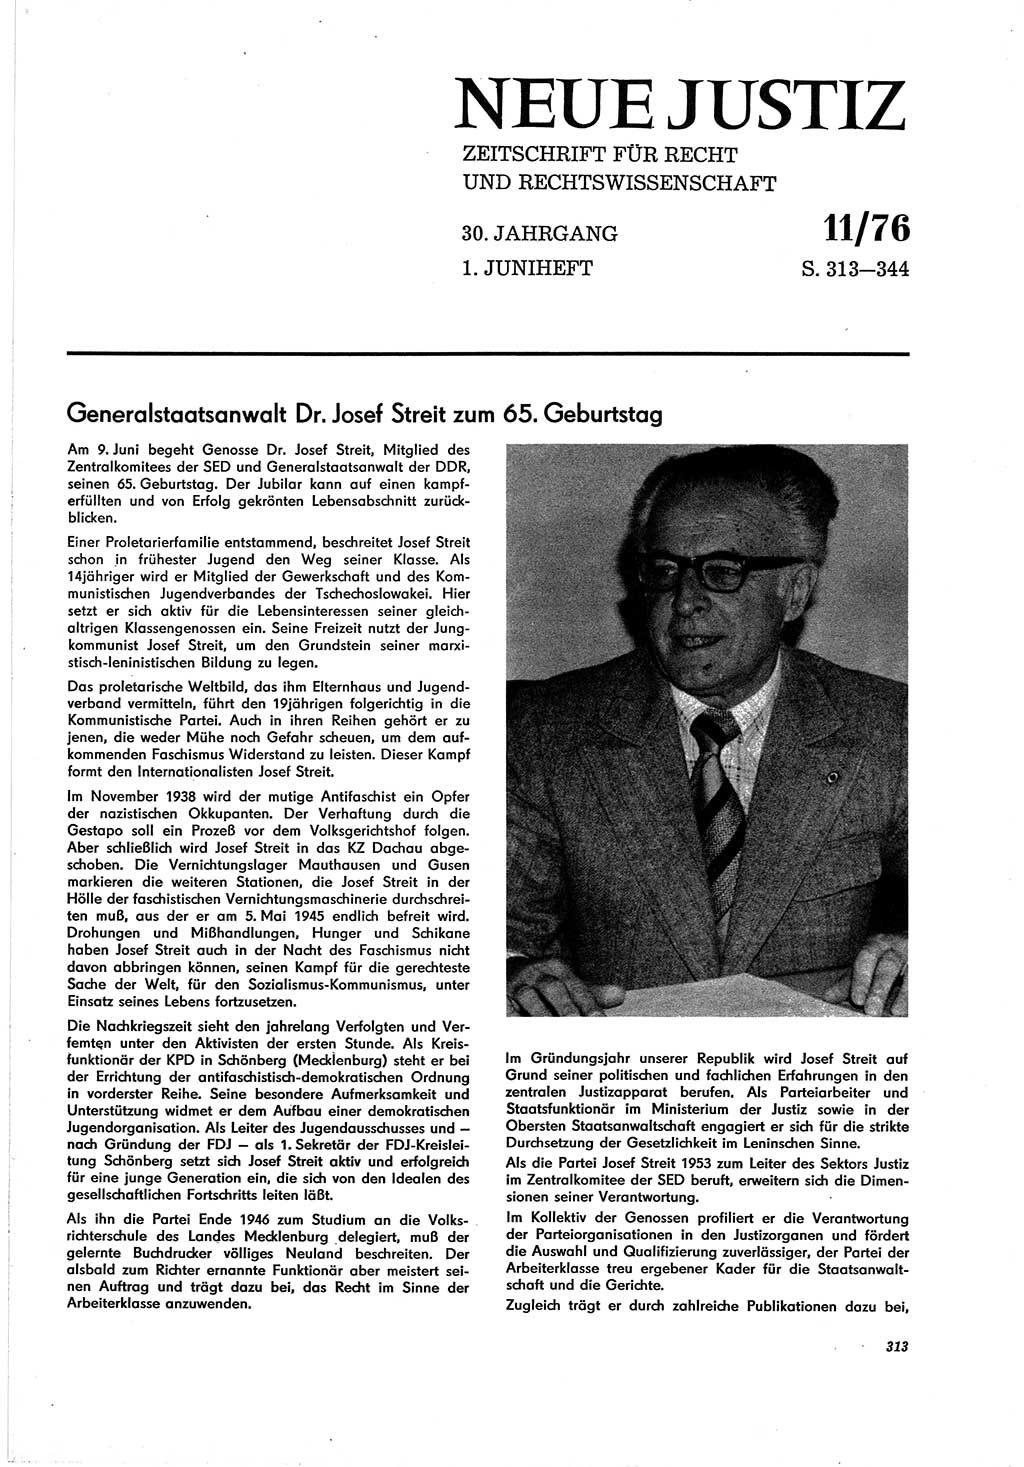 Neue Justiz (NJ), Zeitschrift für Recht und Rechtswissenschaft [Deutsche Demokratische Republik (DDR)], 30. Jahrgang 1976, Seite 313 (NJ DDR 1976, S. 313)